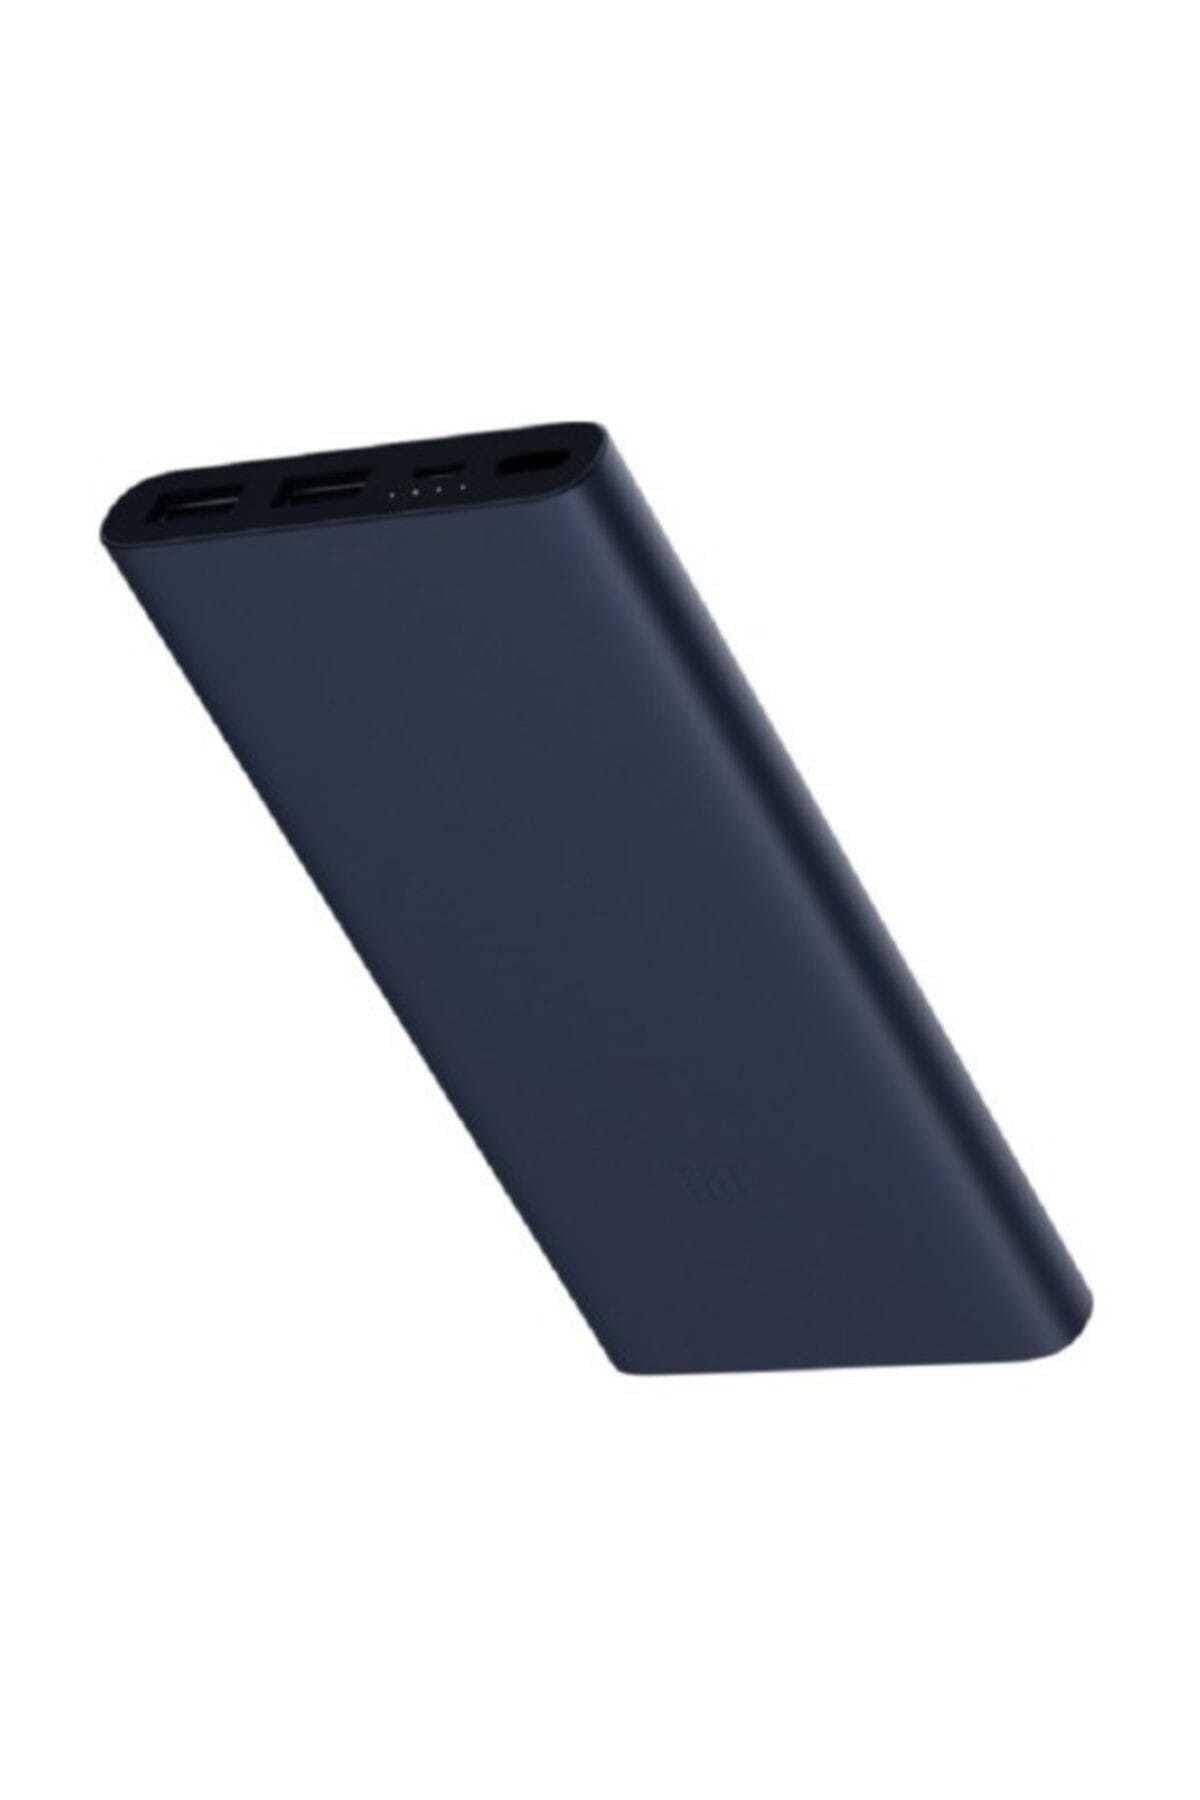 Xiaomi 10000 Mah (versiyon 3) Taşınabilir Şarj Cihazı Lacivert (ince Ve Hafif Kasa)